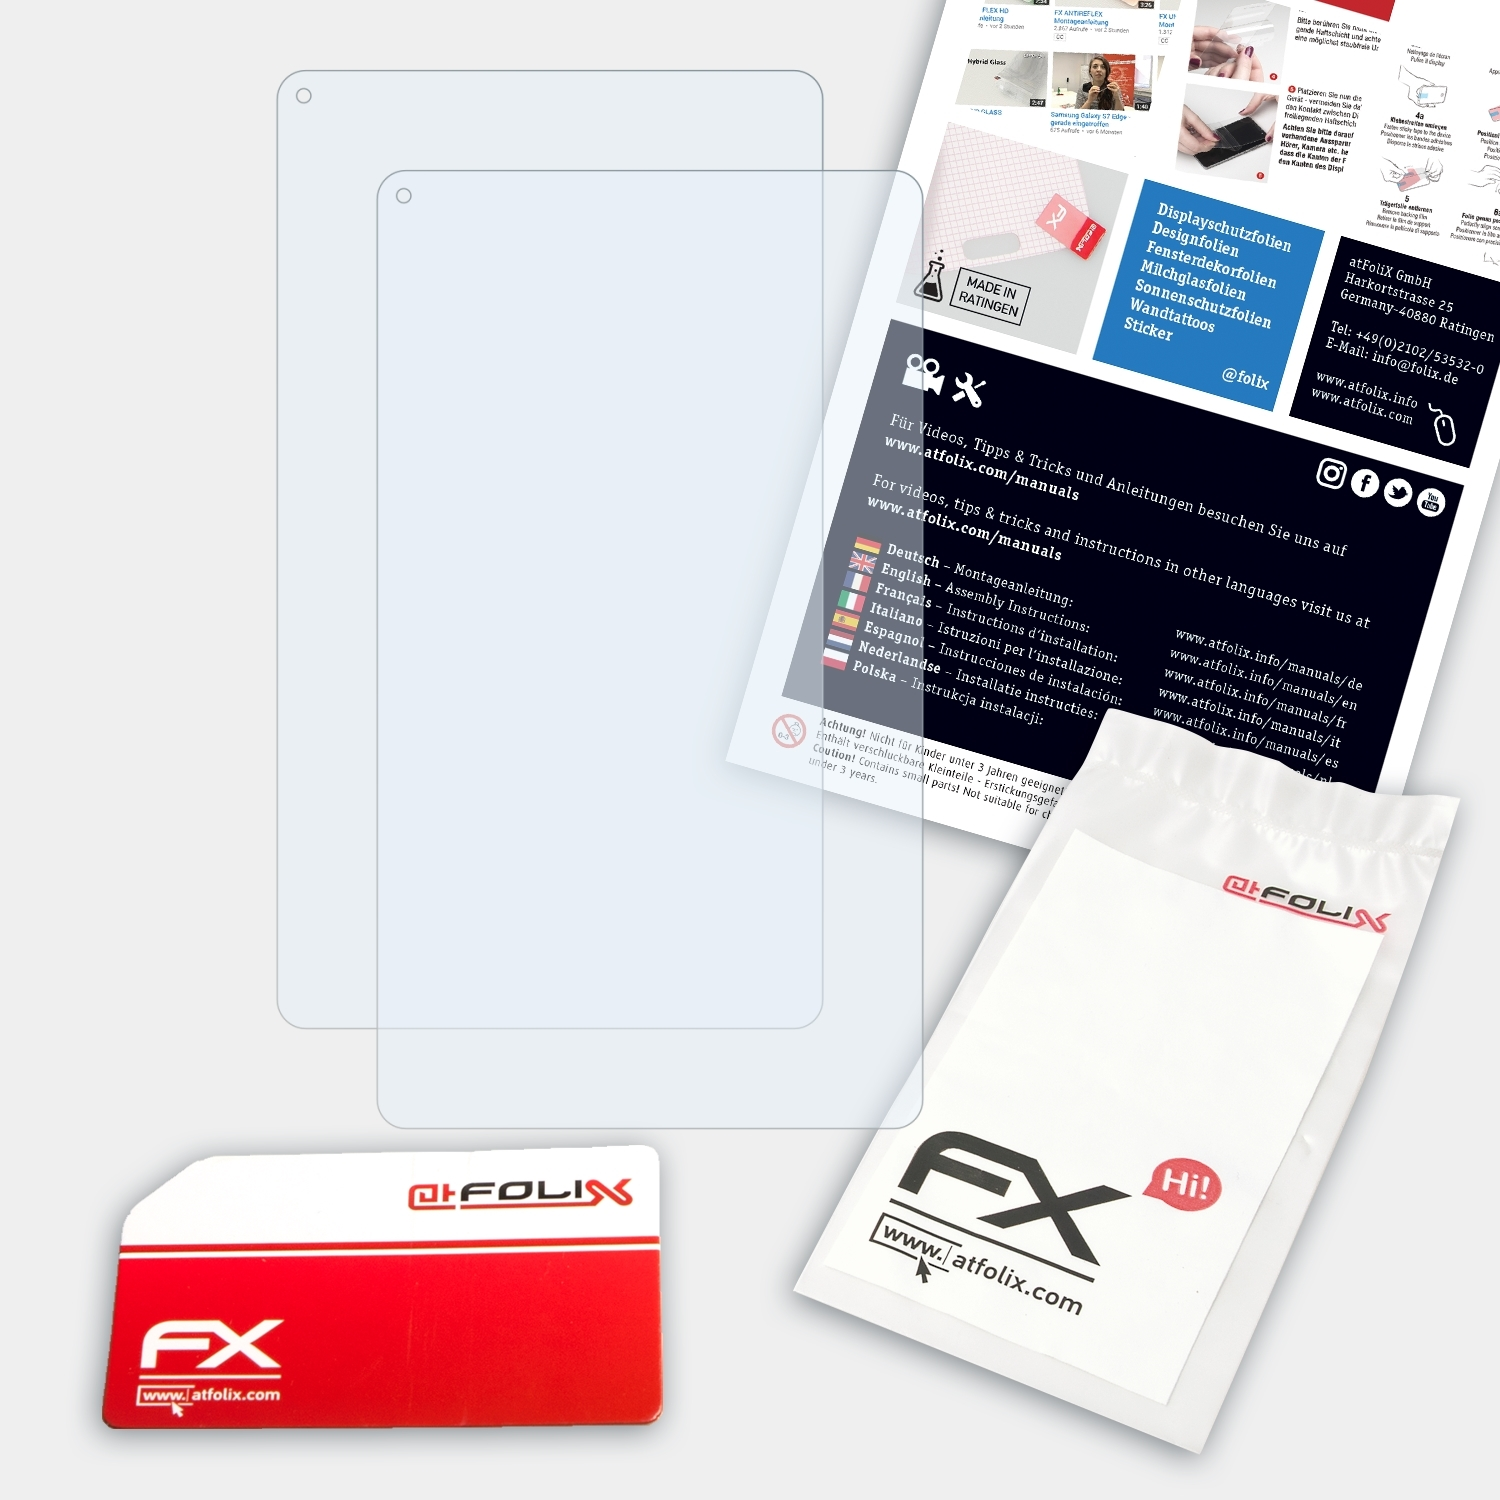 Touchlet XA100.pro (PX-8844)) Displayschutz(für FX-Clear 2x ATFOLIX